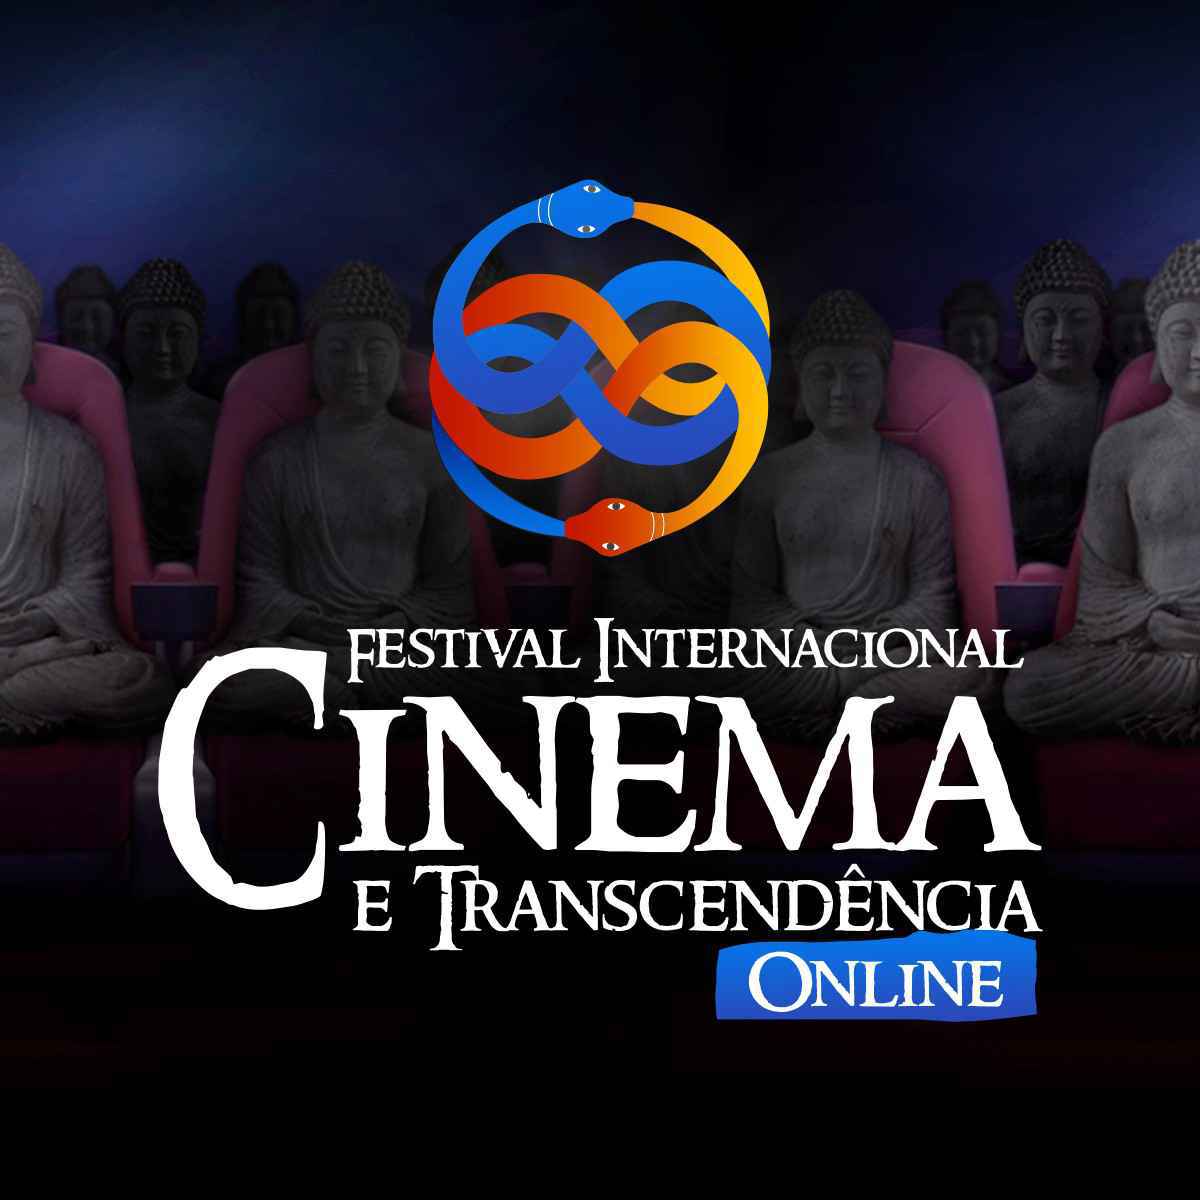 Sétima edição do Festival Internacional Cinema e Transcendência, realizado online neste ano.